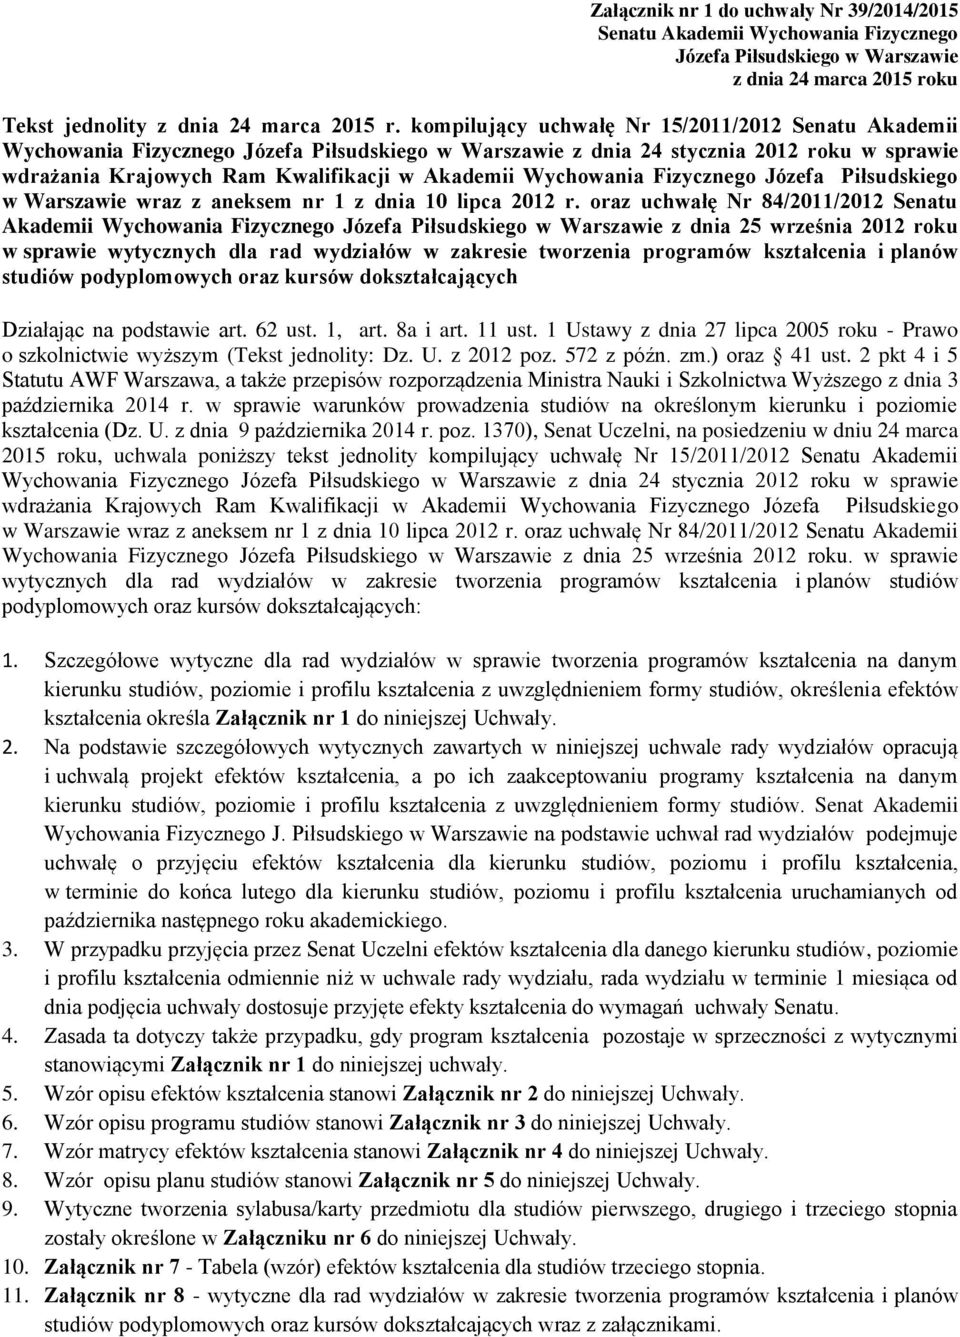 Wychowania Fizycznego Józefa Piłsudskiego w Warszawie wraz z aneksem nr 1 z dnia 10 lipca 2012 r.